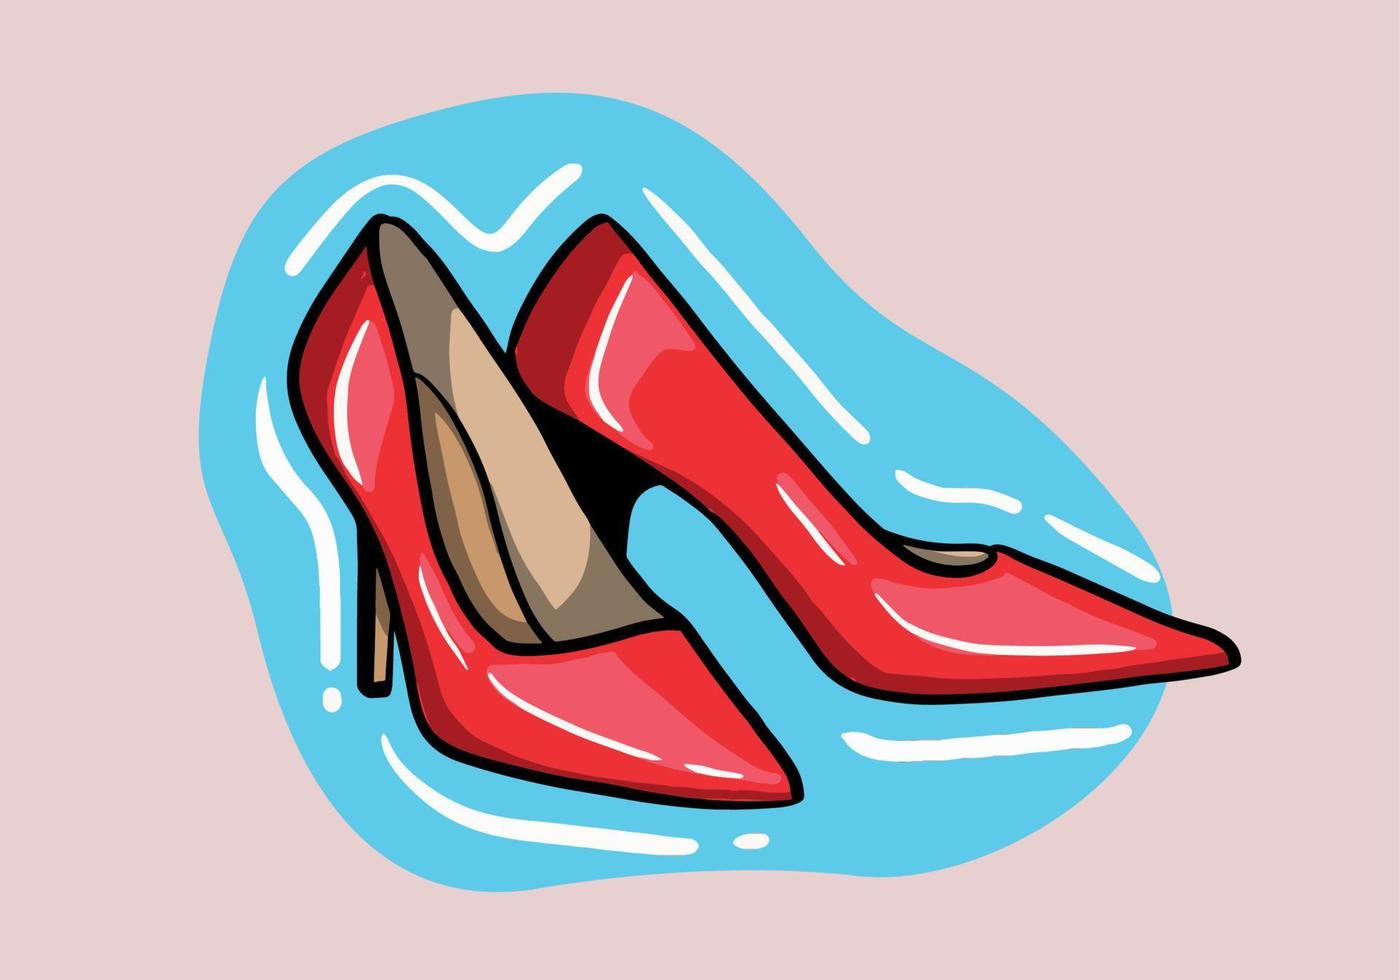 mano dibujado vector ilustración de elegante de moda rojo De las mujeres Zapatos con alto tacón aislado en antecedentes